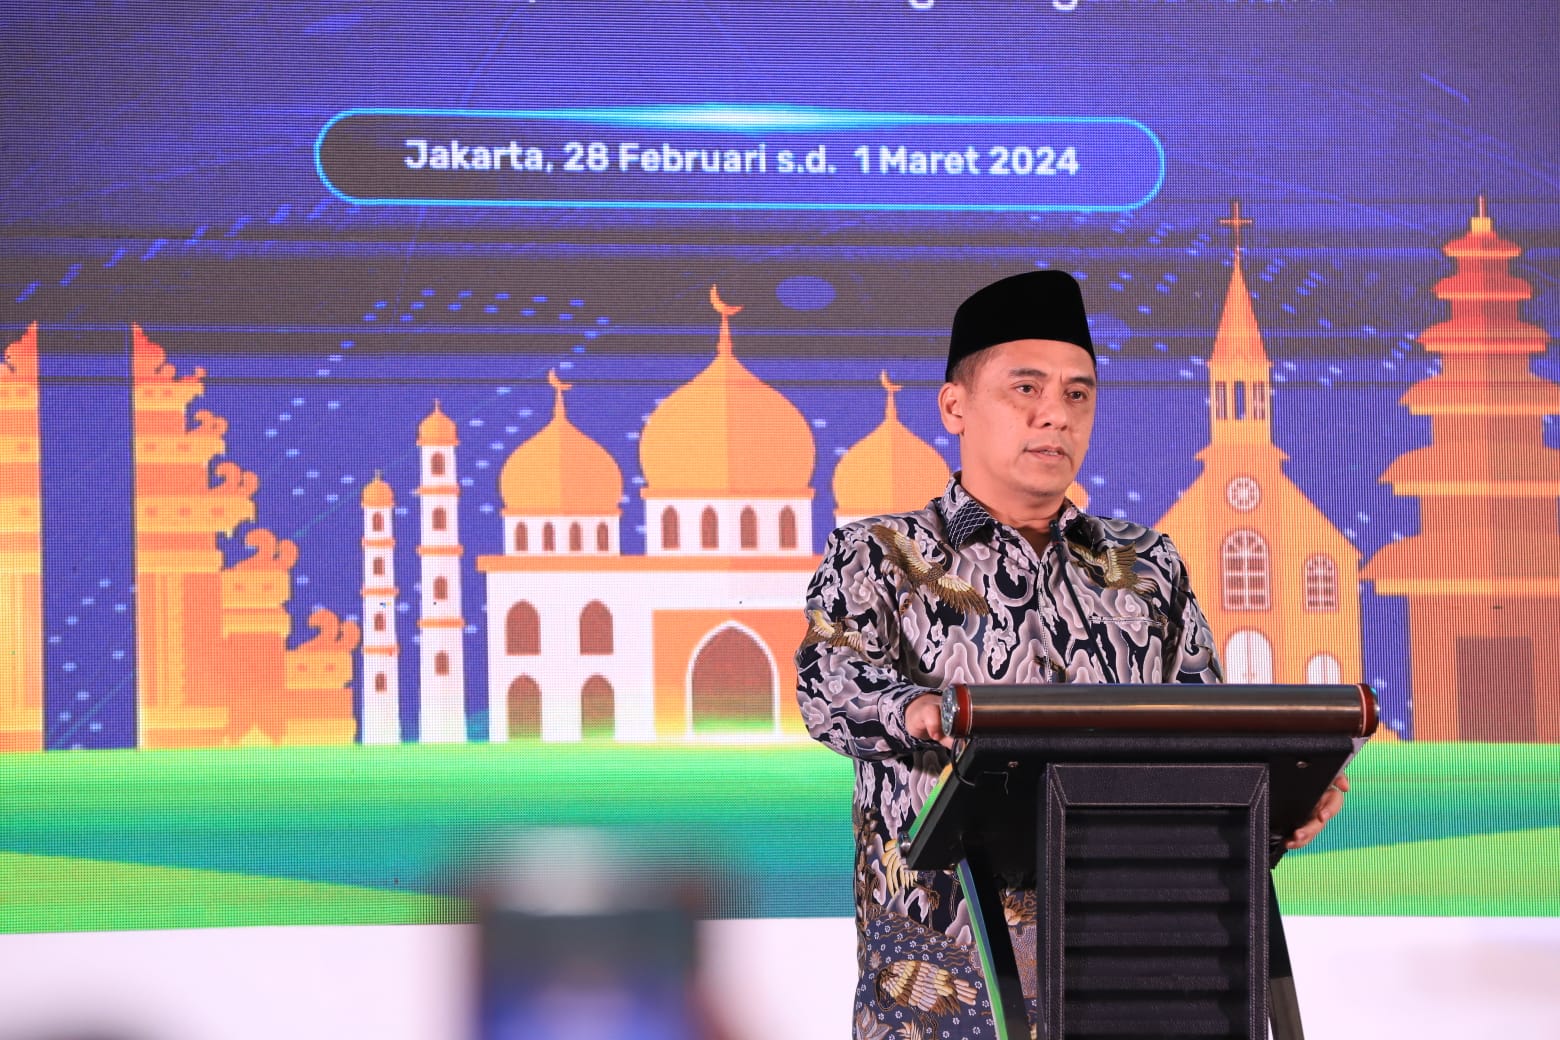 Wakil Menteri Agama, H Saiful Rahmat Dasuki saat melaunching buku “Ensiklopedia Seni Budaya Islam di Nusantara” pada acara Rakor Direktorat Penerangan Agama Islam di Jakarta, Rabu (28/02/2024) siang.